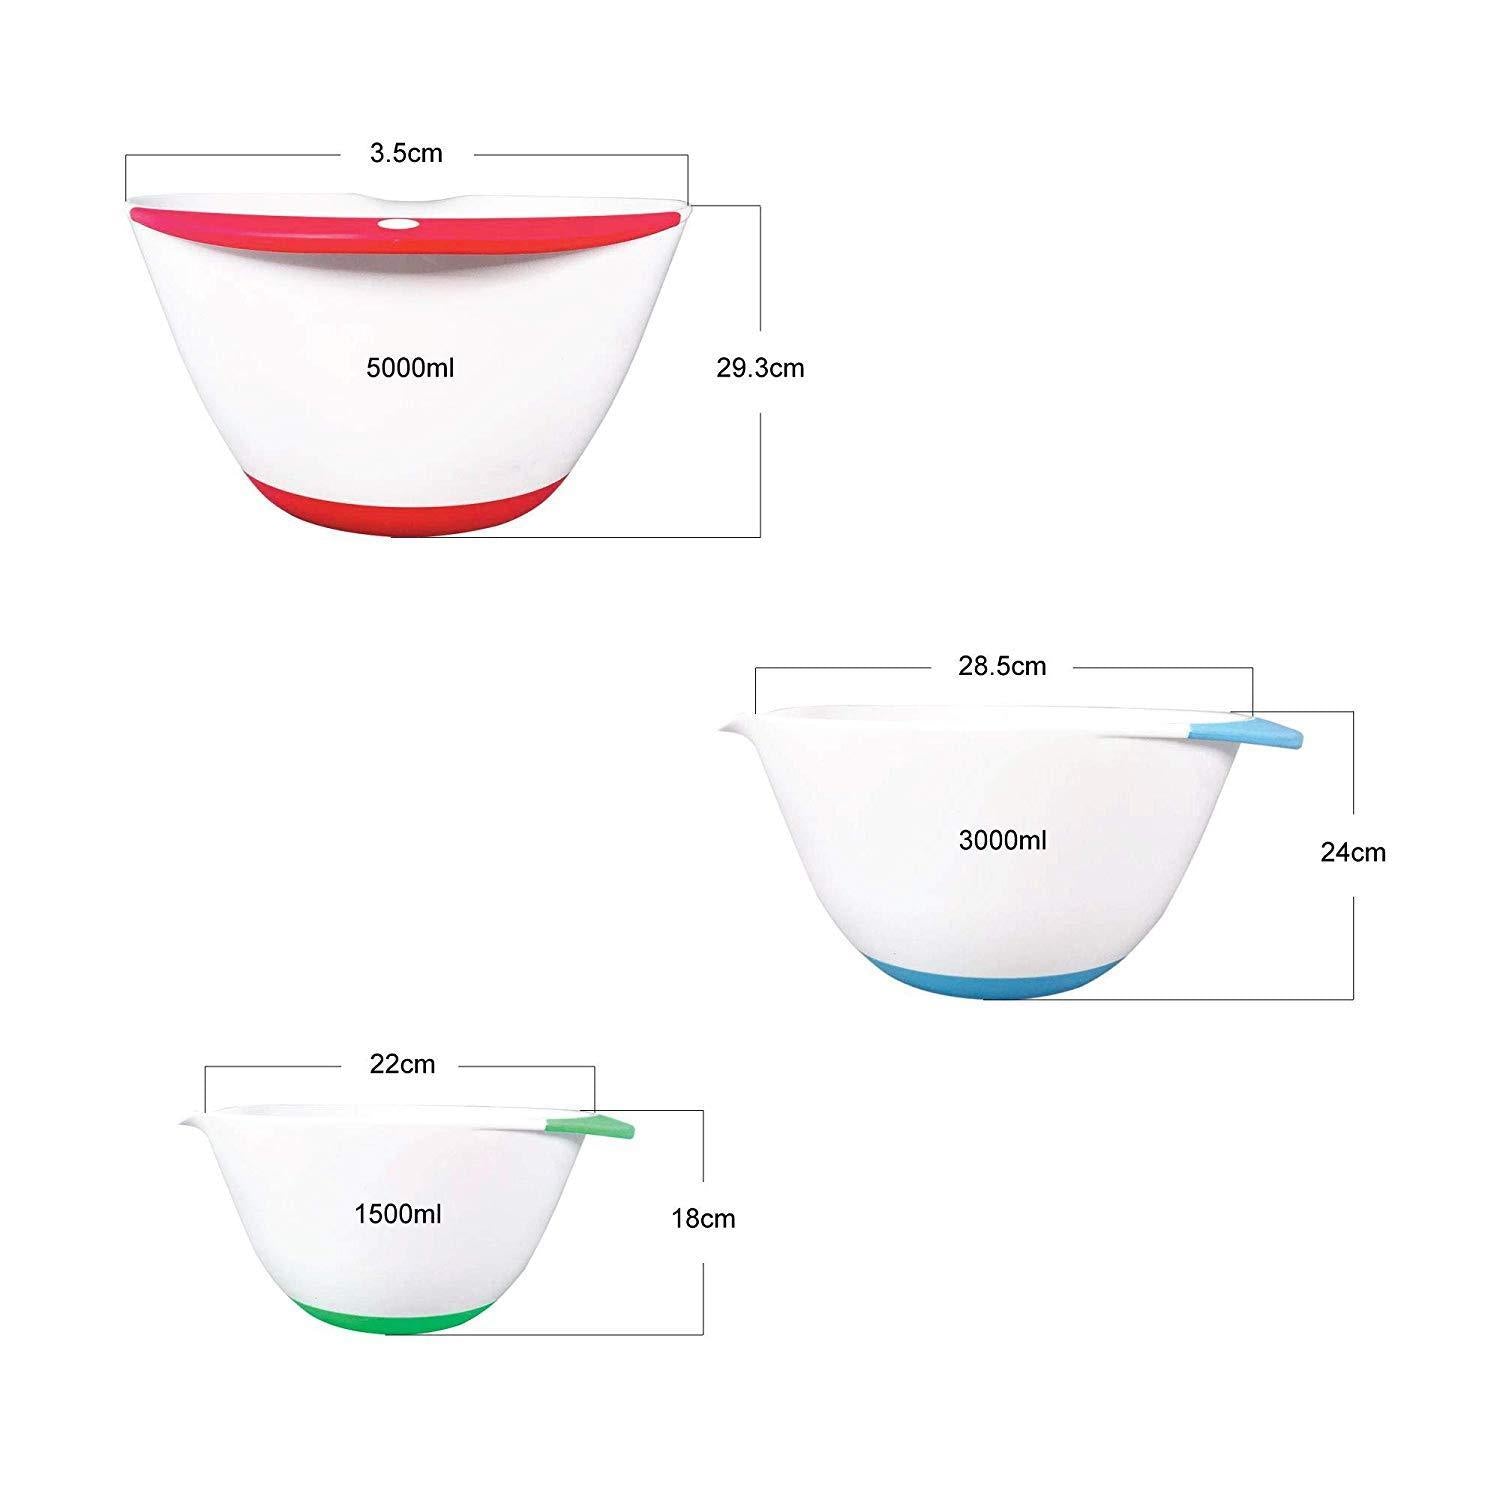 Plastic Mixing Bowls - Set of 3